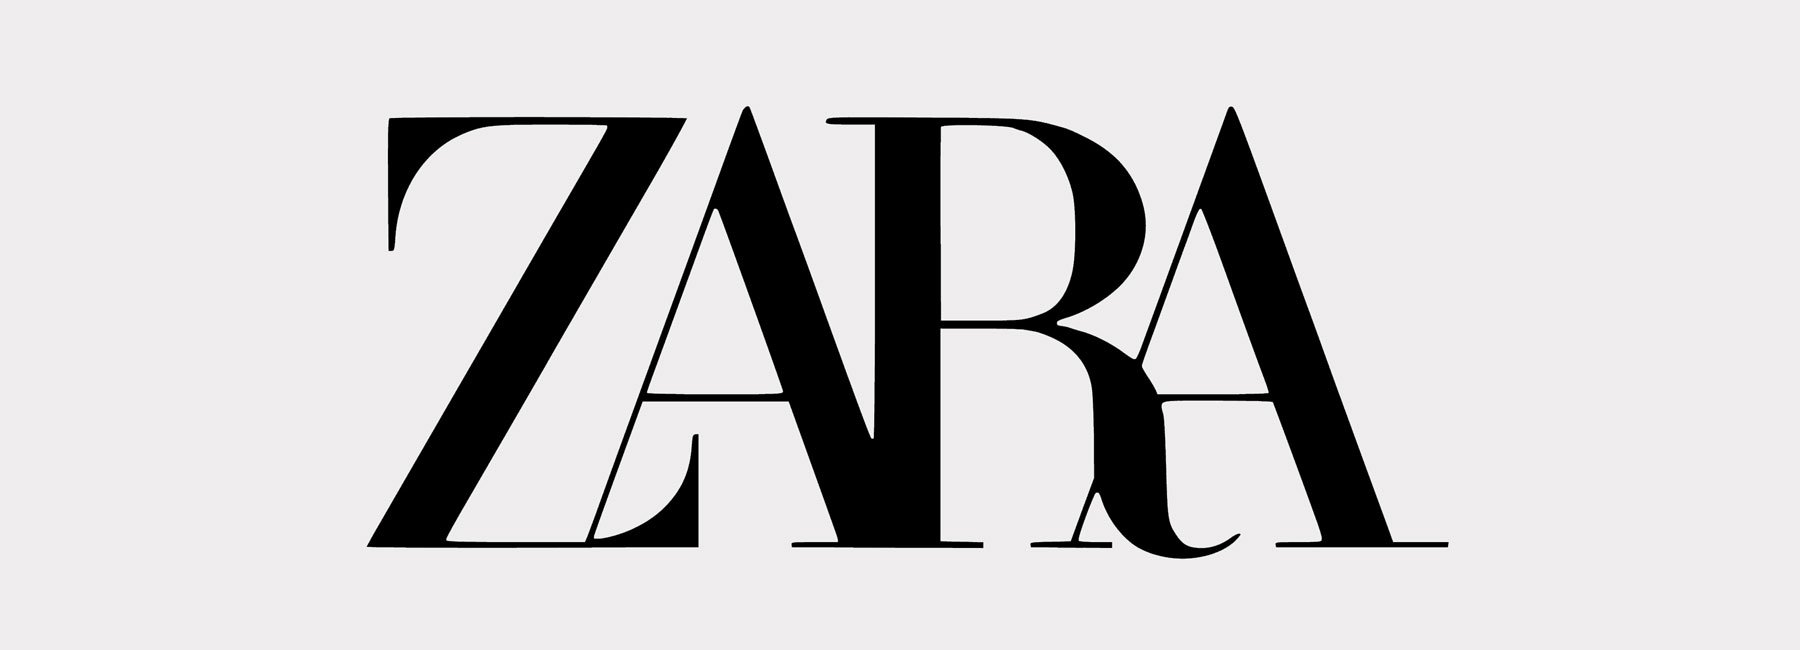 ZARA HD transparent PNG Logo free download #40049